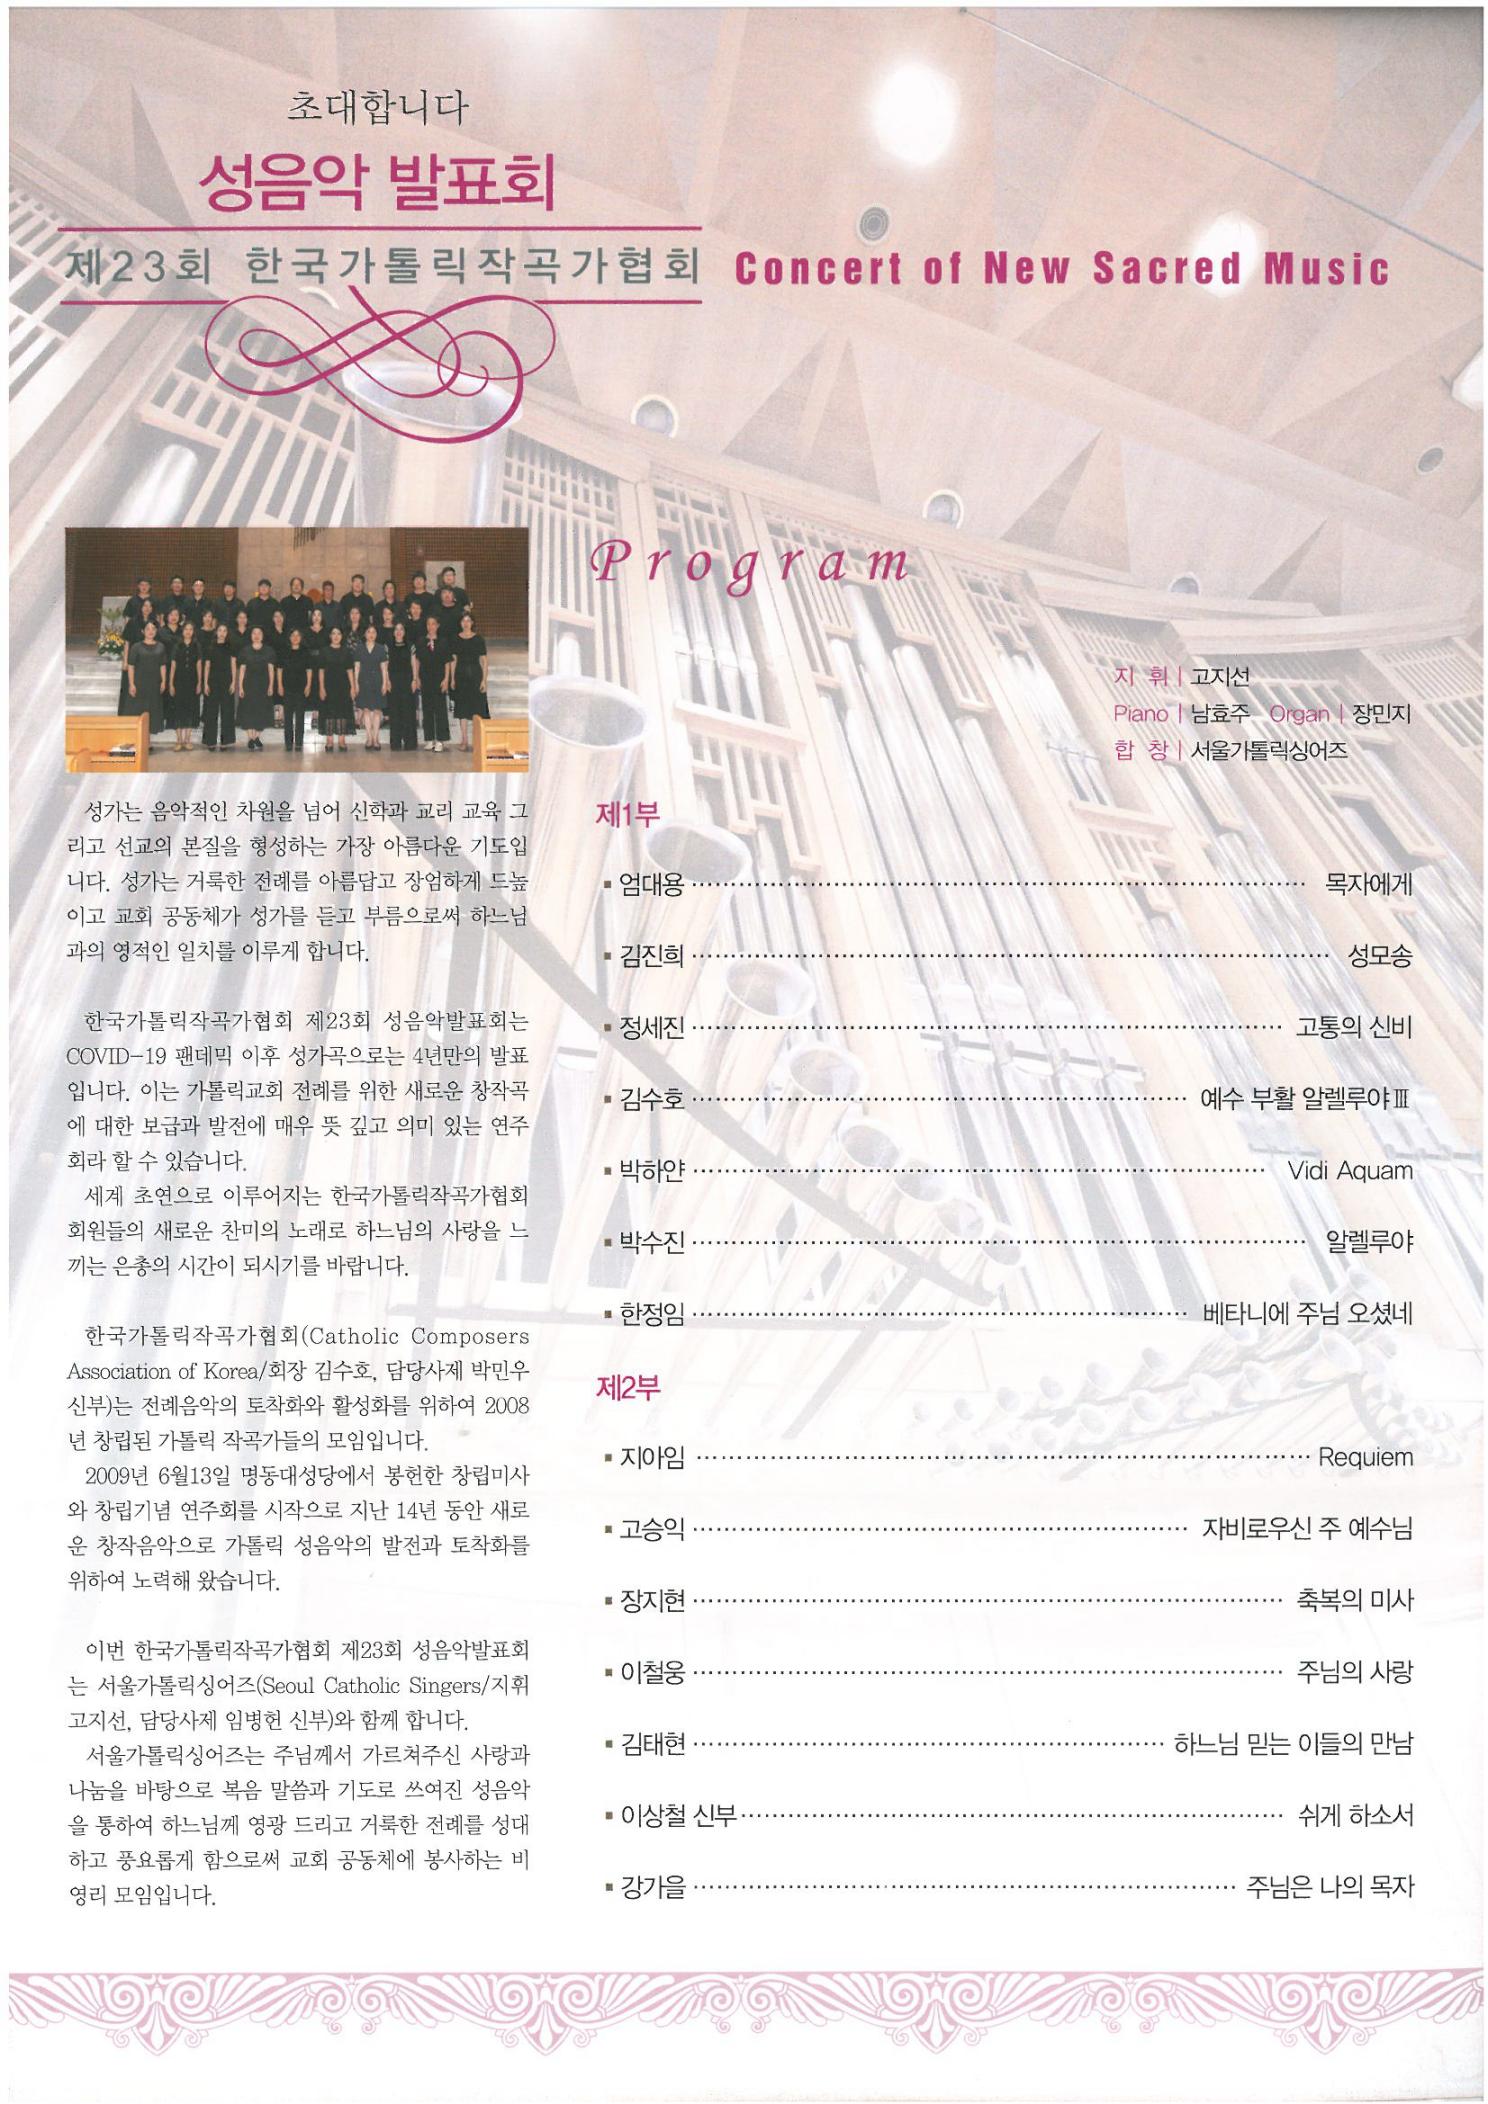 공연정보) 제23회 한국가톨릭작곡가협회 성음악발표회의 관련된 이미지 입니다.